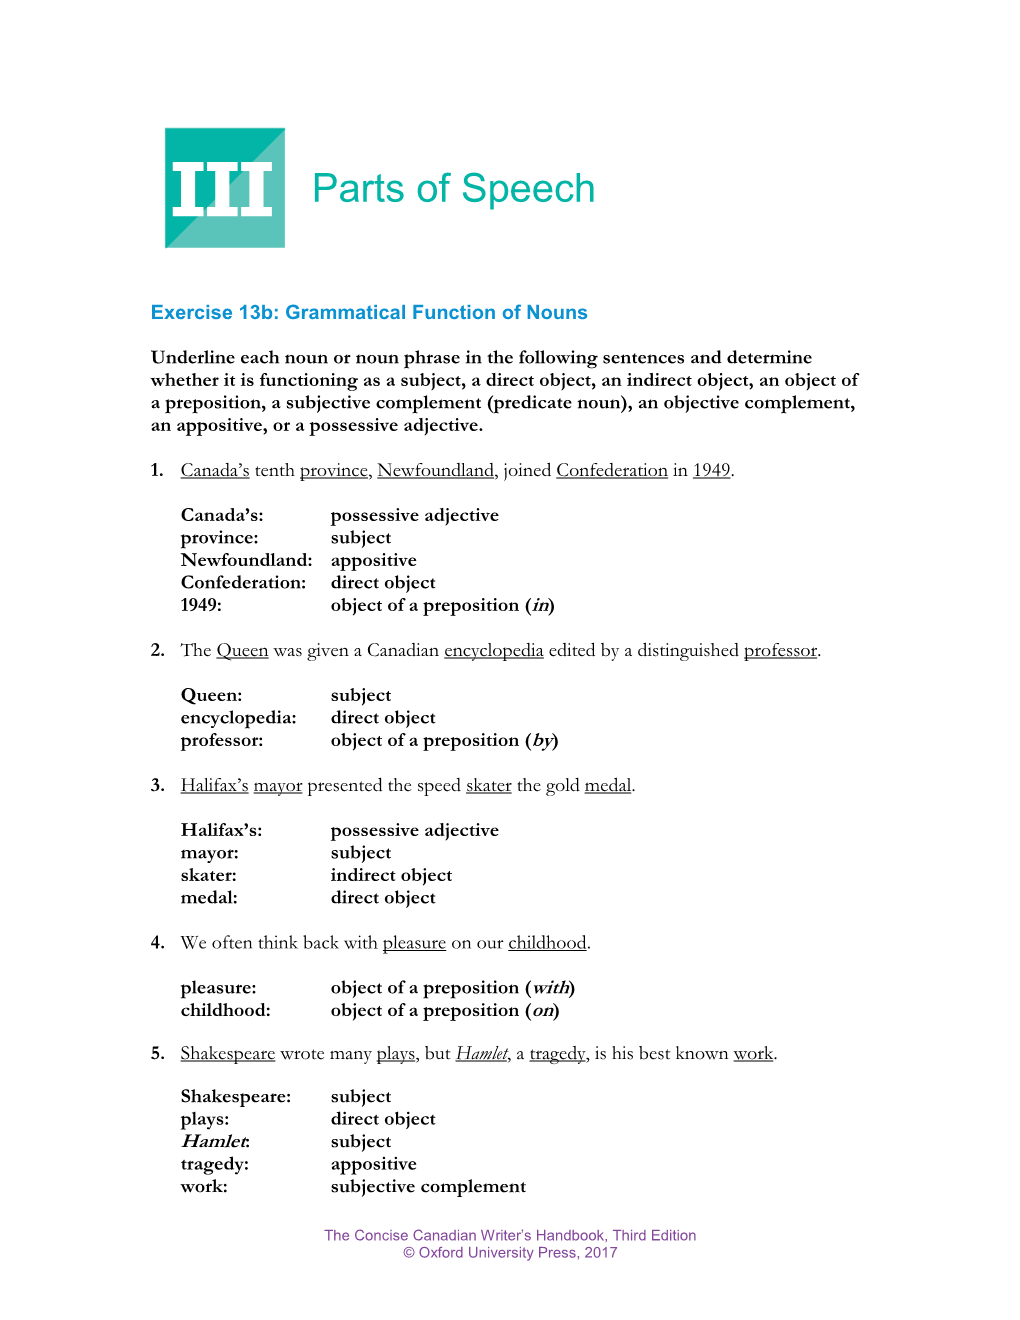 III Parts of Speech